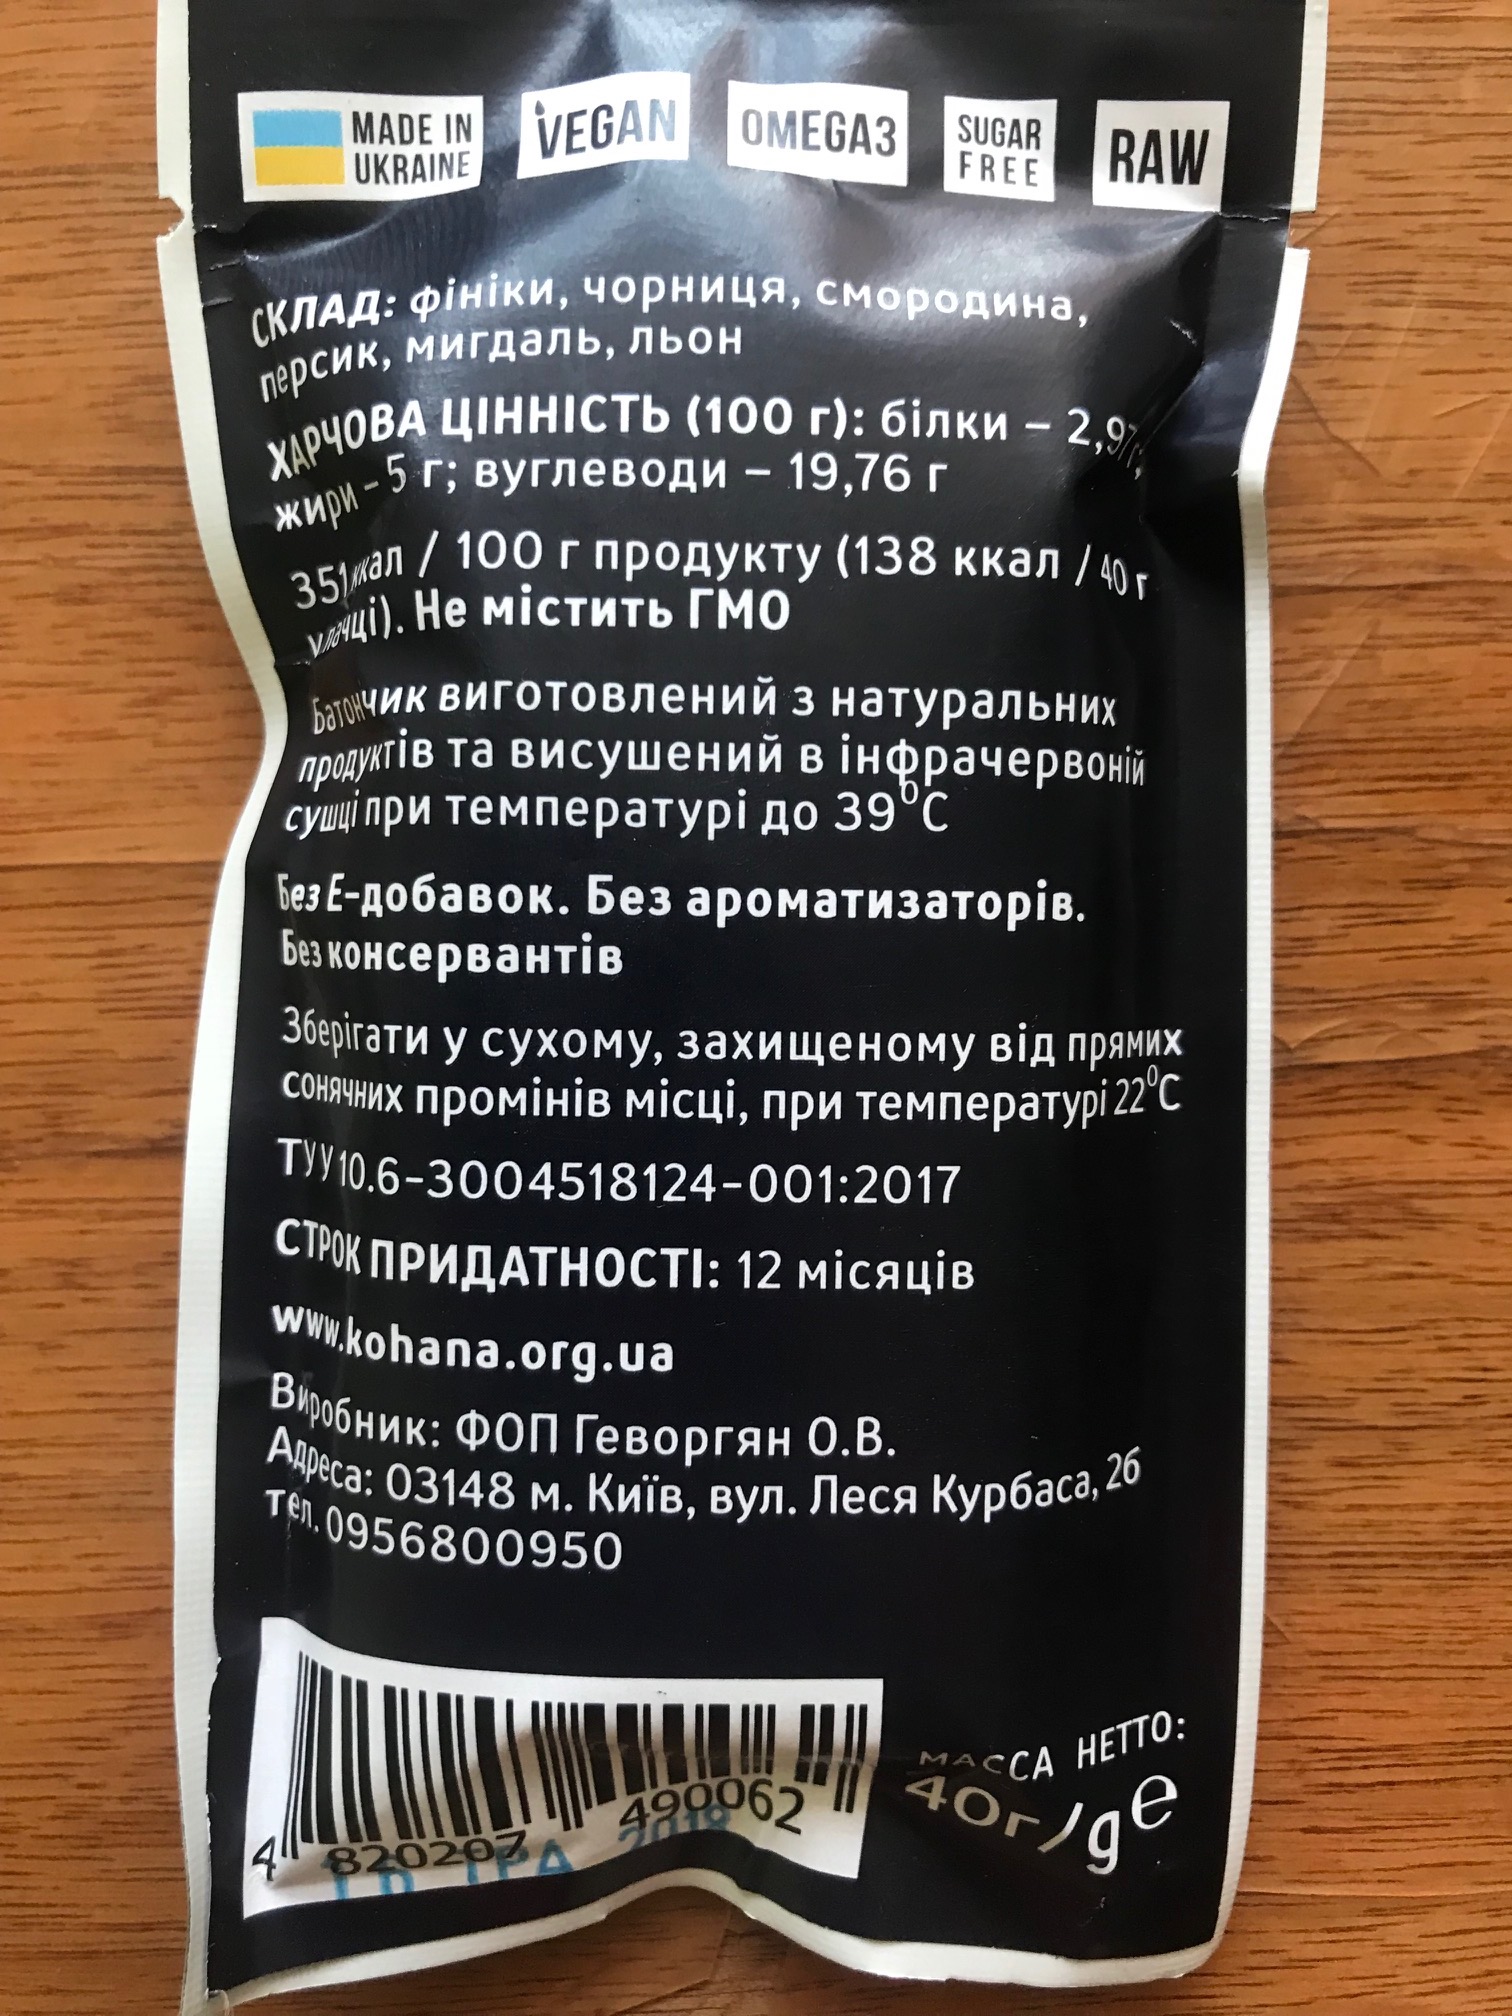 Ukrainian high-quality goods